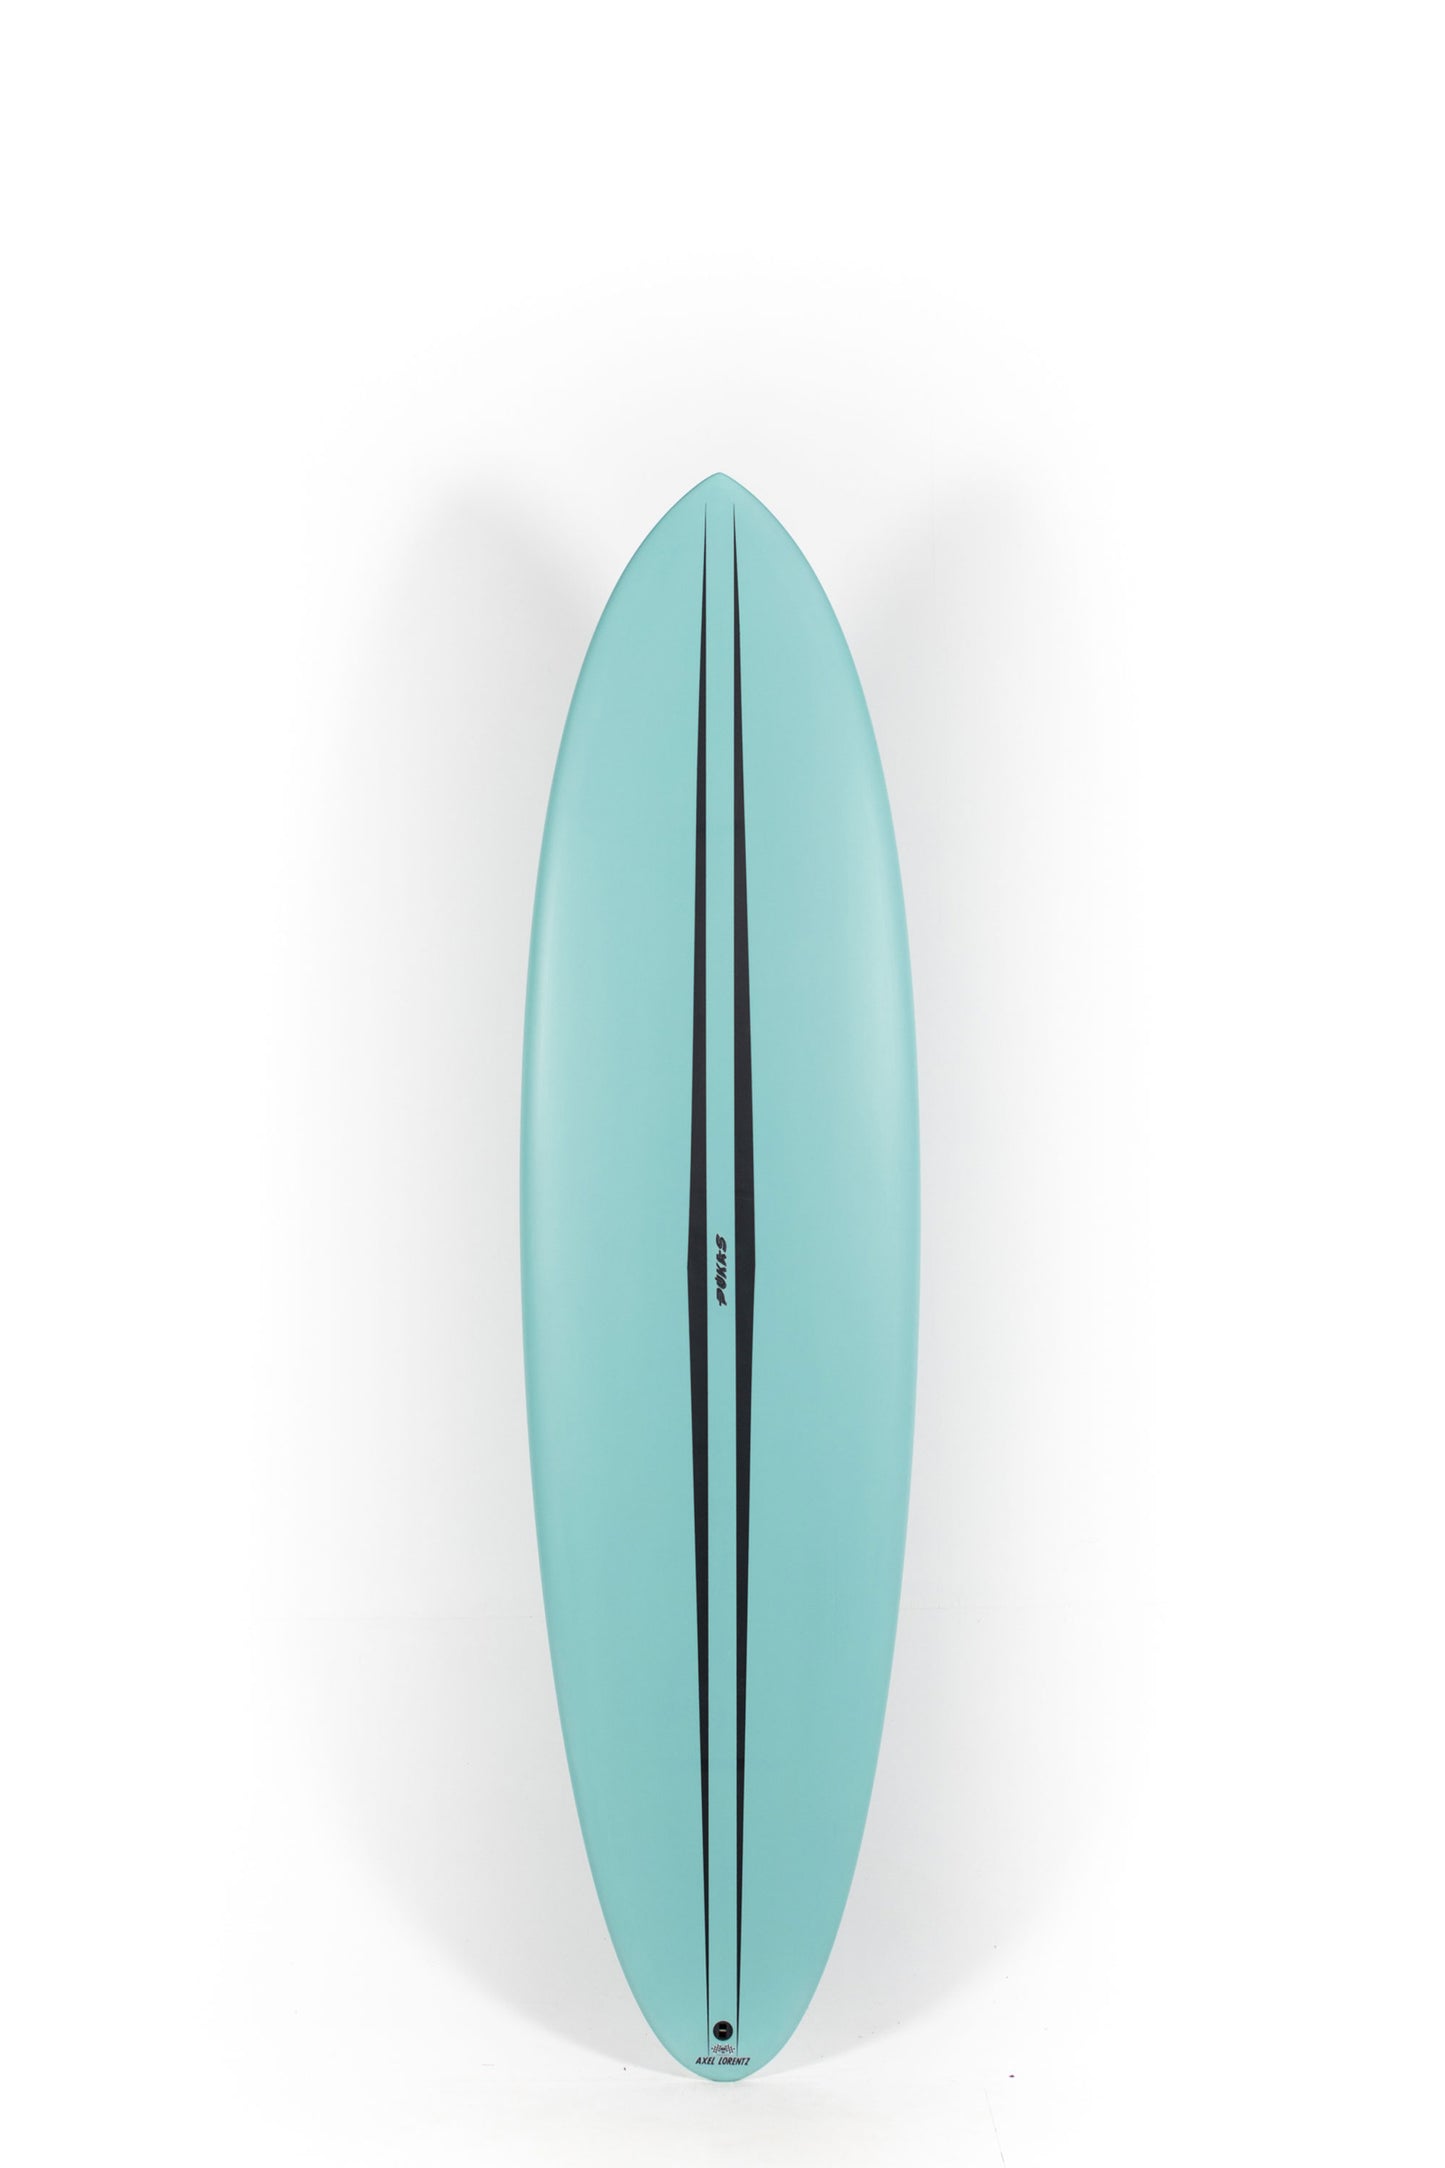 Pukas Surf Shop - Pukas Surfboard - LA CÔTE by Axel Lorentz - 7´2" x 21,63 x 3,06 - 51,77L -  AX08064